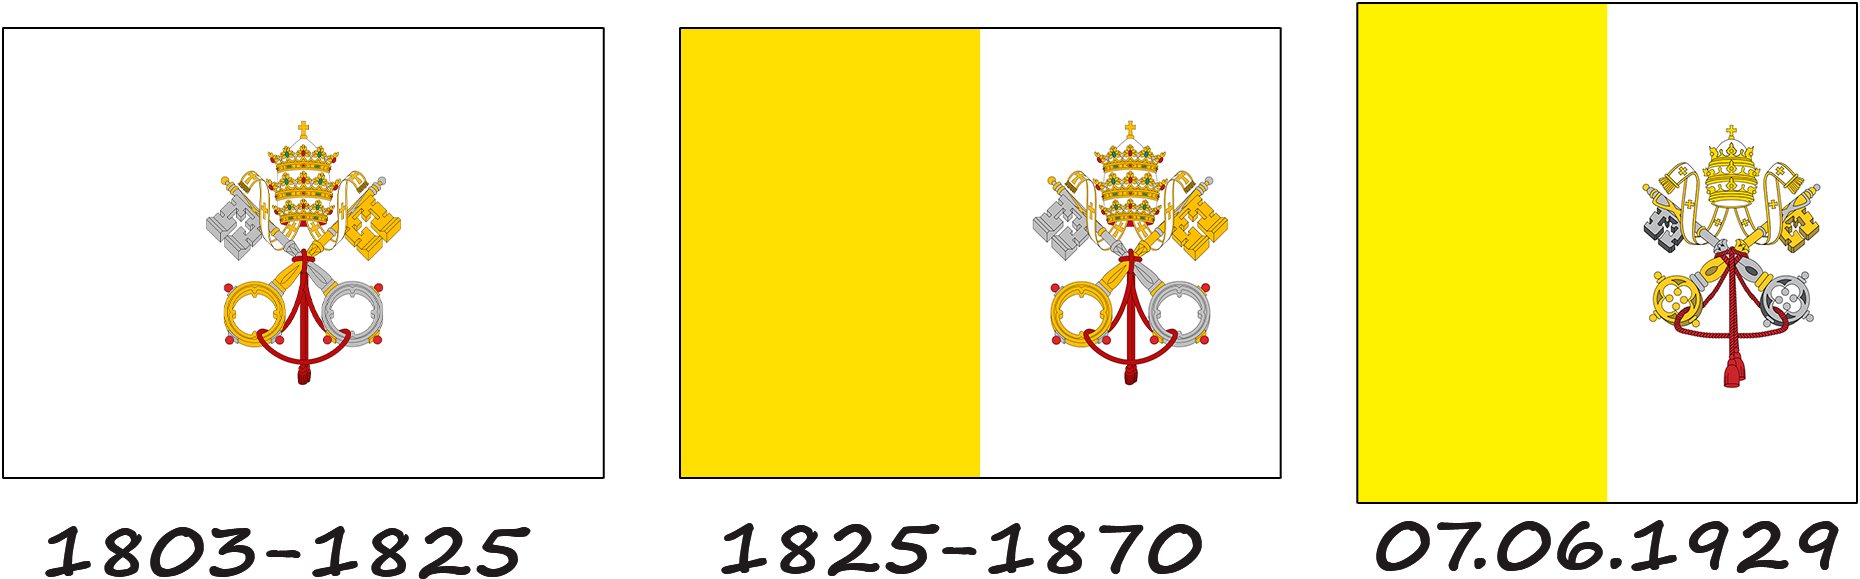 Історія прапора Ватикану